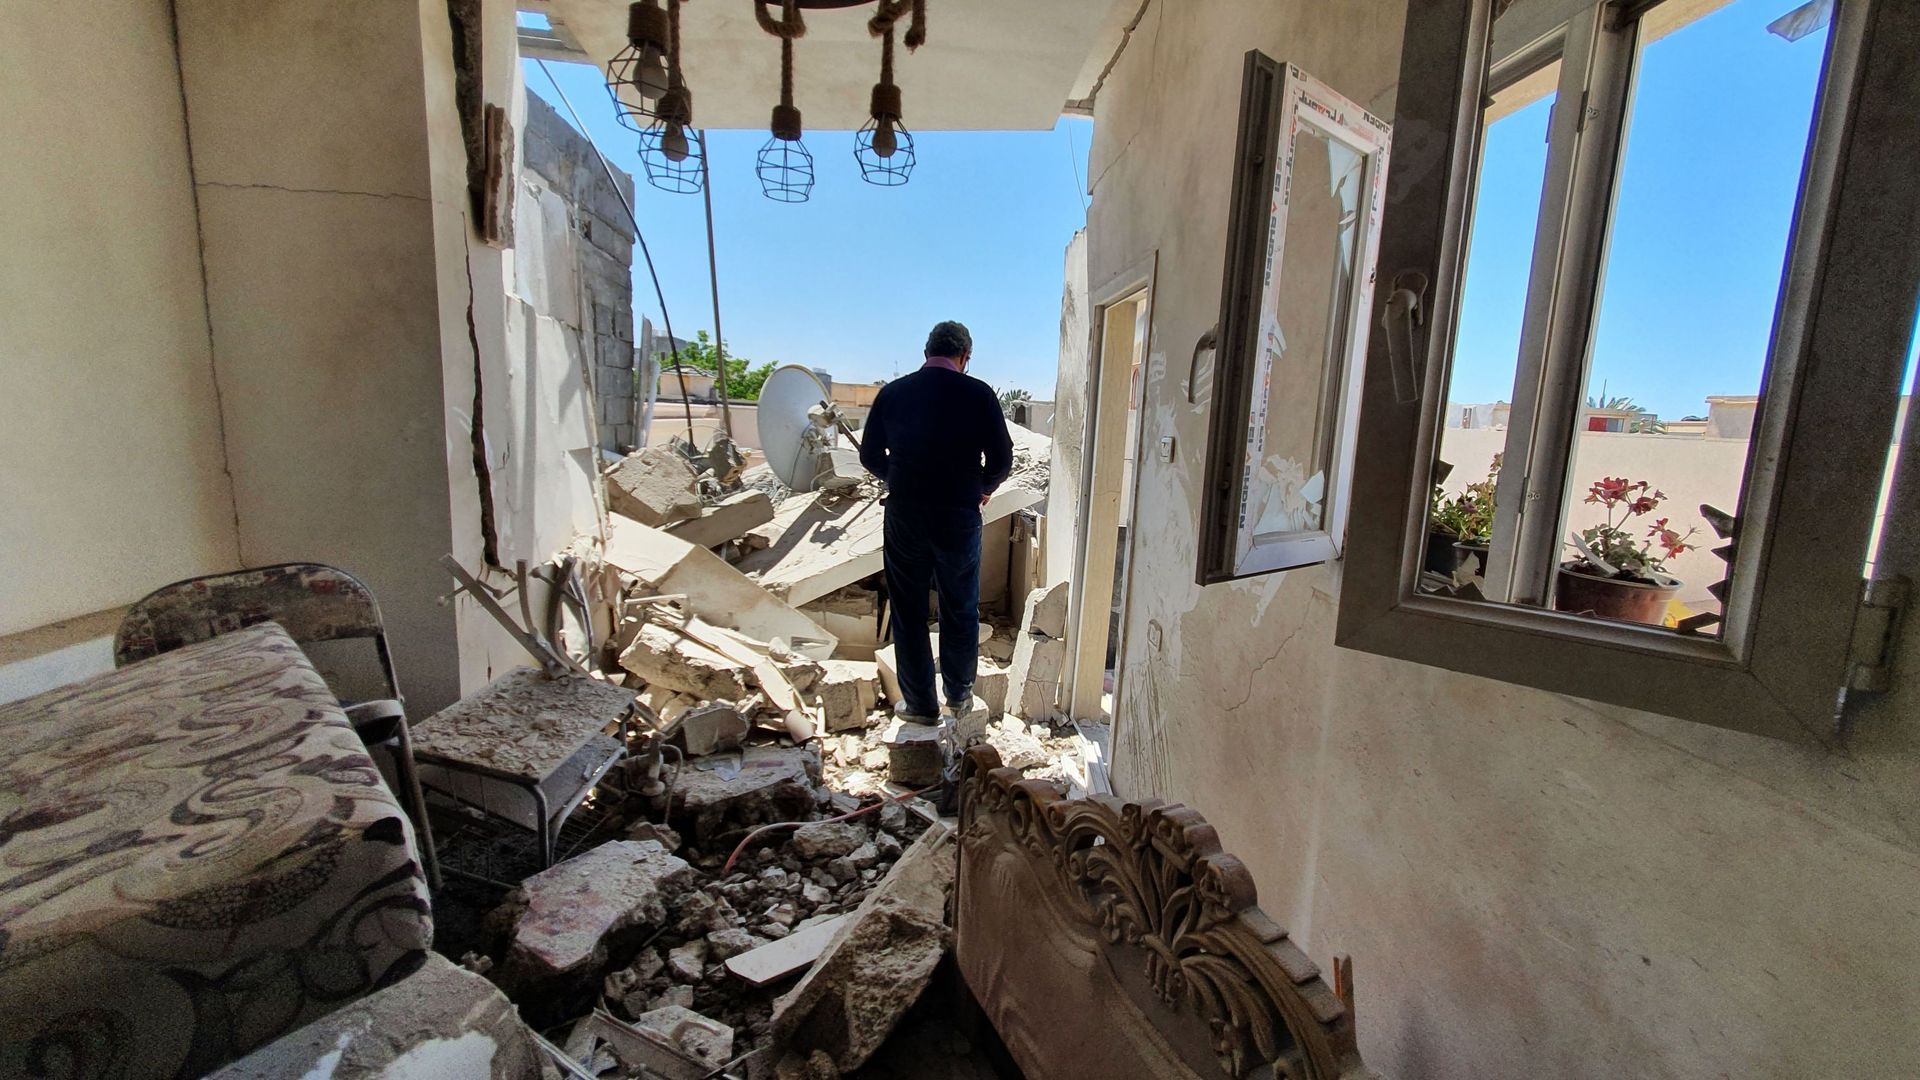 Un habitant se promène dans les décombres d’un bâtiment endommagé à cause d’un bombardement des forces de Khalifa Haftar dans un quartier résidentiel de Tripoli, détenu par le gouvernement d’accord national (GNA) reconnu par les Nations unies, le 1er mai 